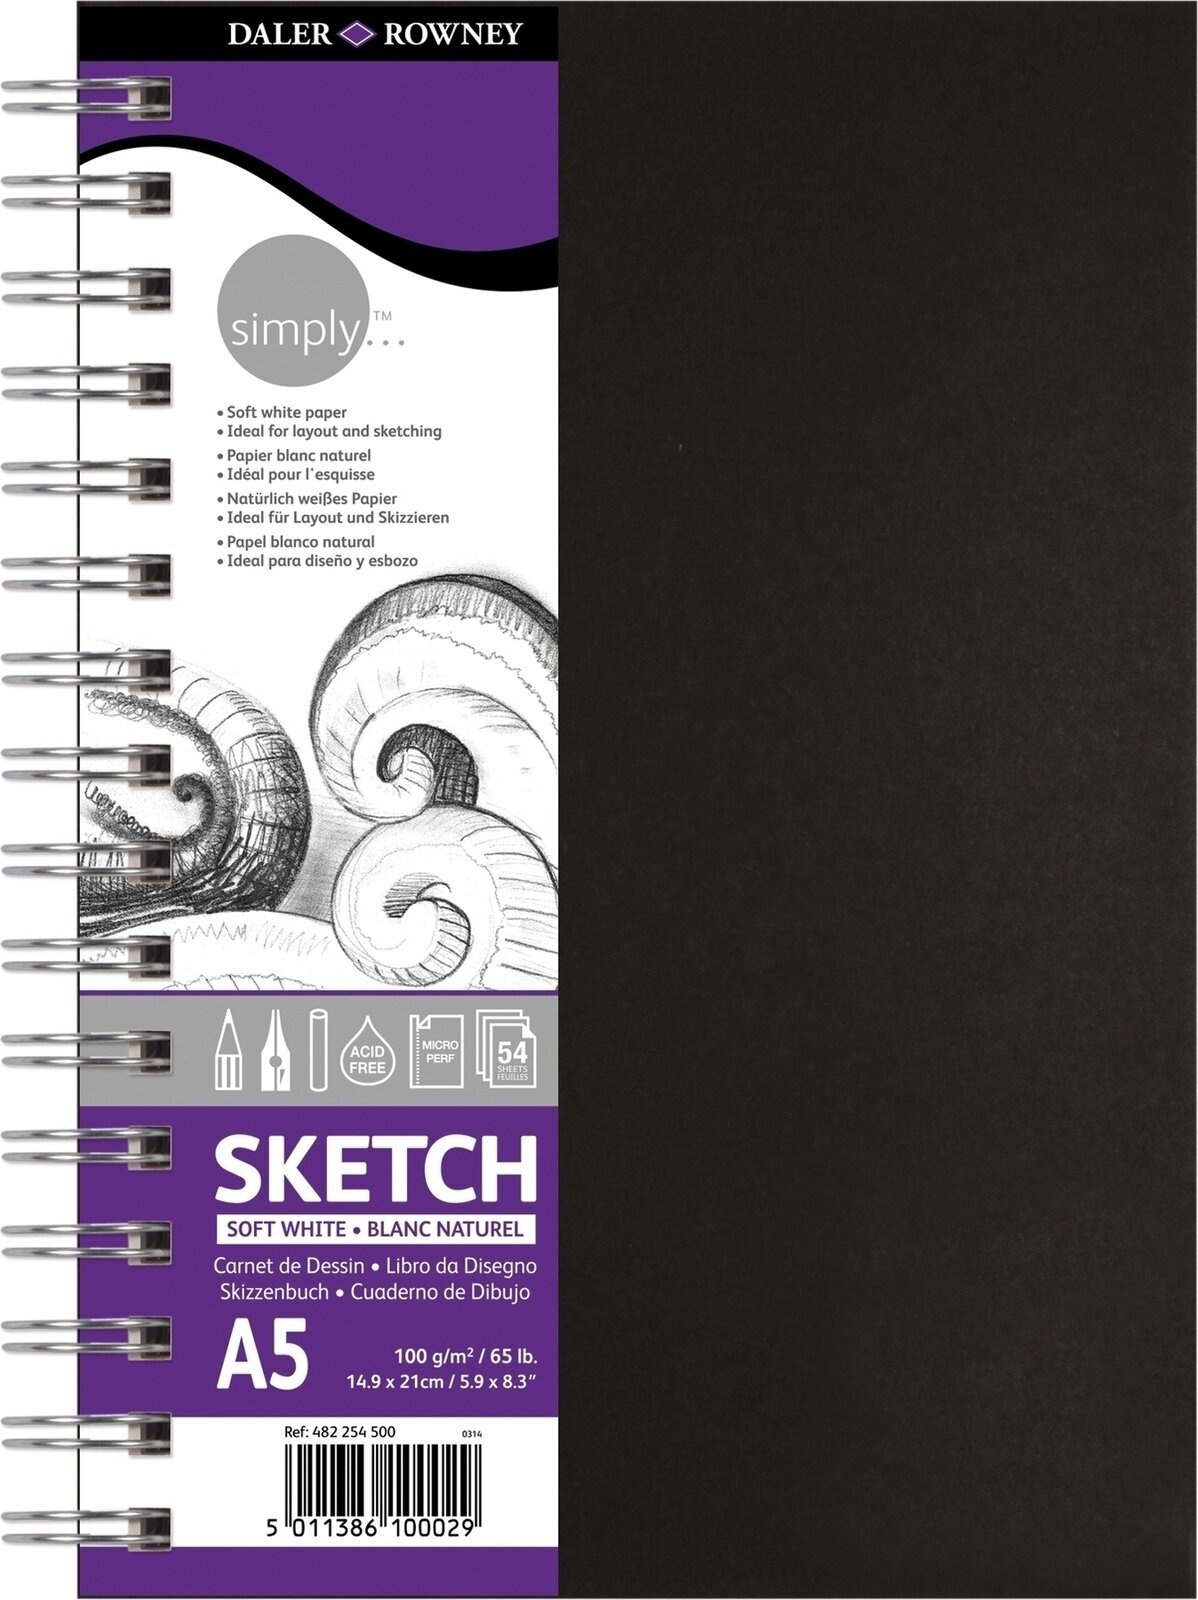 Sketchbook Daler Rowney Simply Sketch Book Simply A5 100 g Black Sketchbook